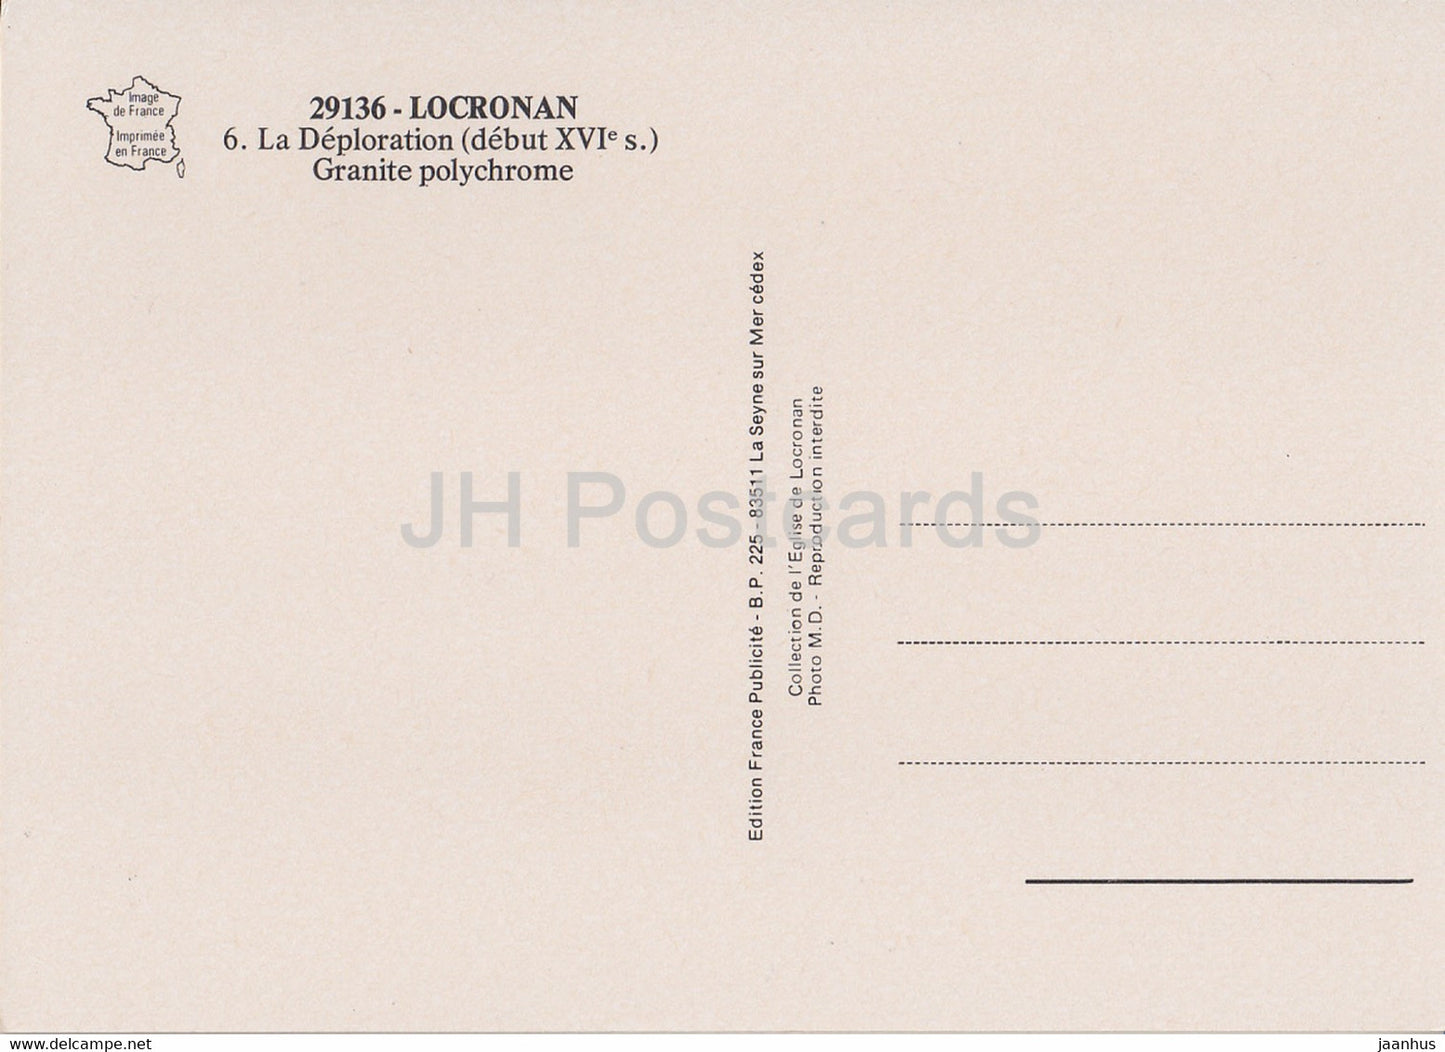 Locronan - La Déploration - Granit Polychrome - 29136 - France - inutilisé